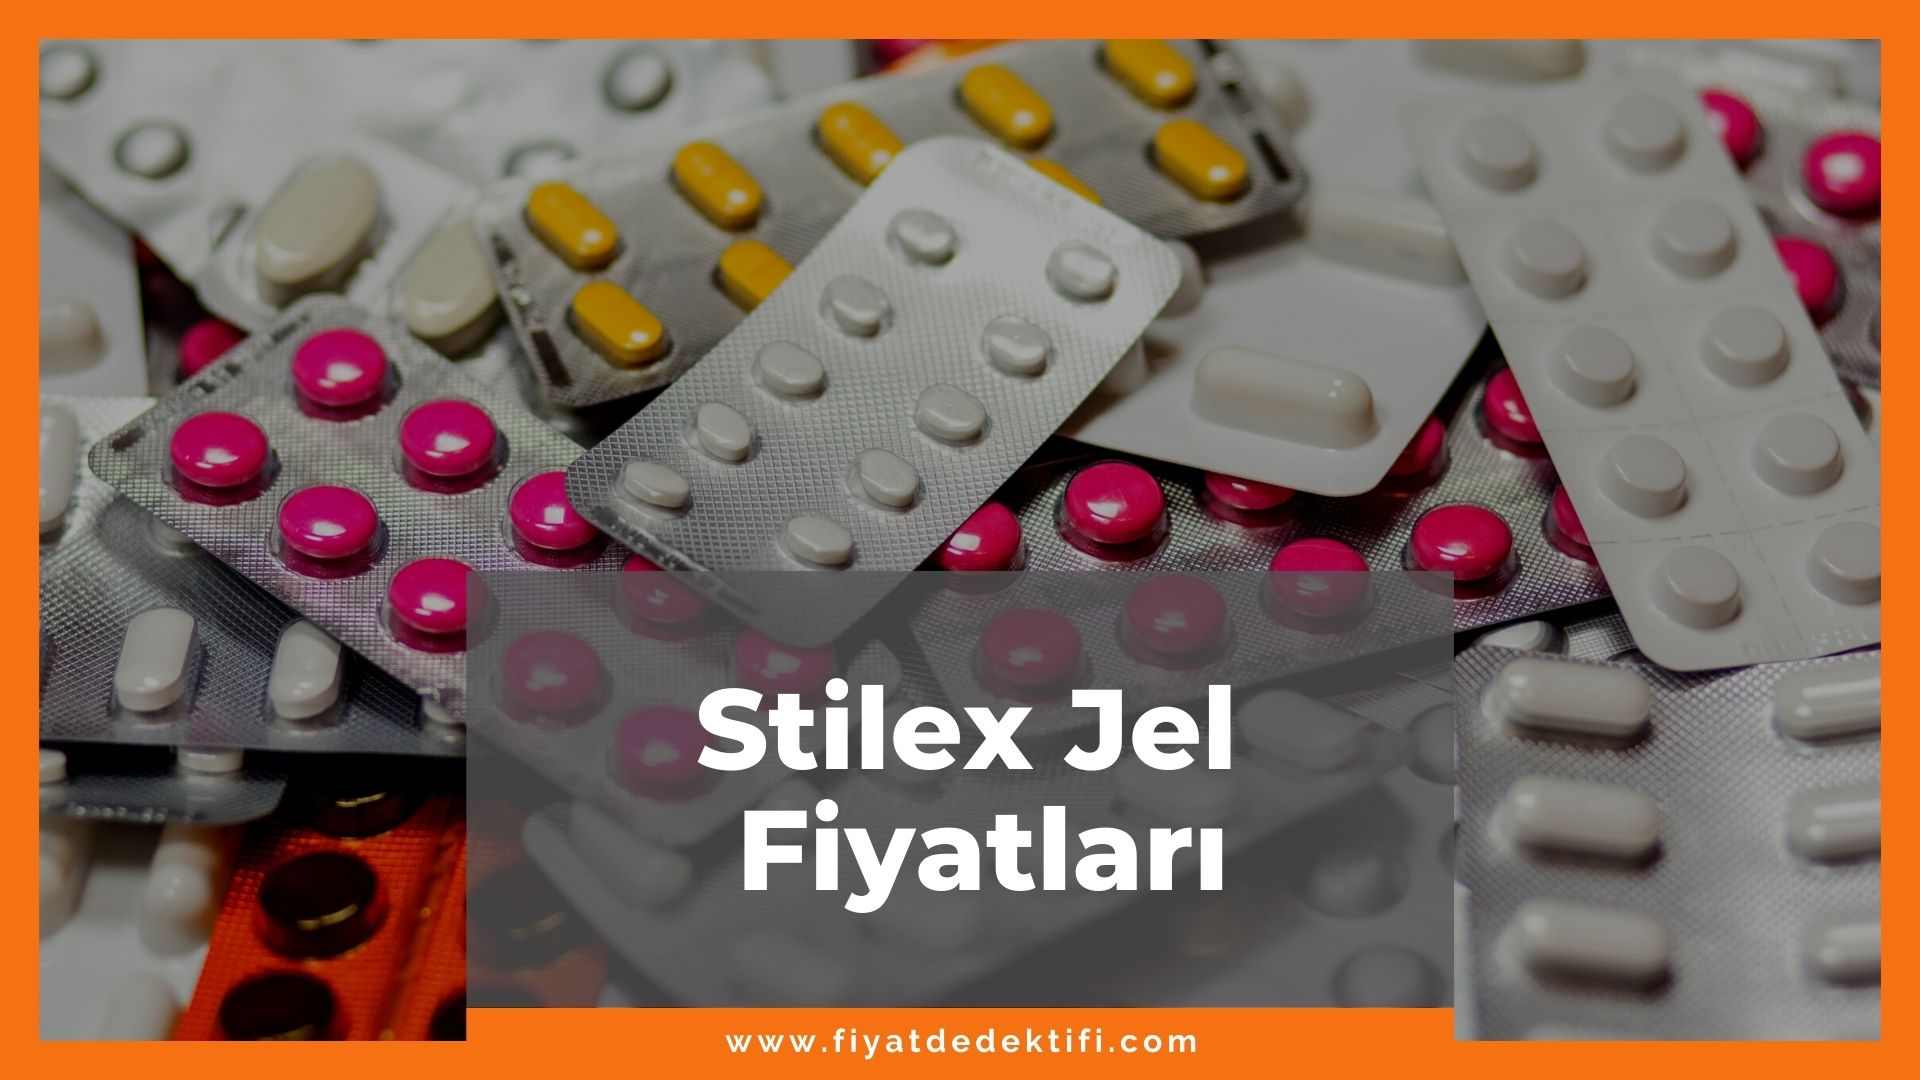 Stilex Fiyat 2021, Stilex Fiyatı, Stilex Jel Fiyatı, stilex jel fiyatı zamlandı mı, stilex jel fiyatı ne kadar oldu